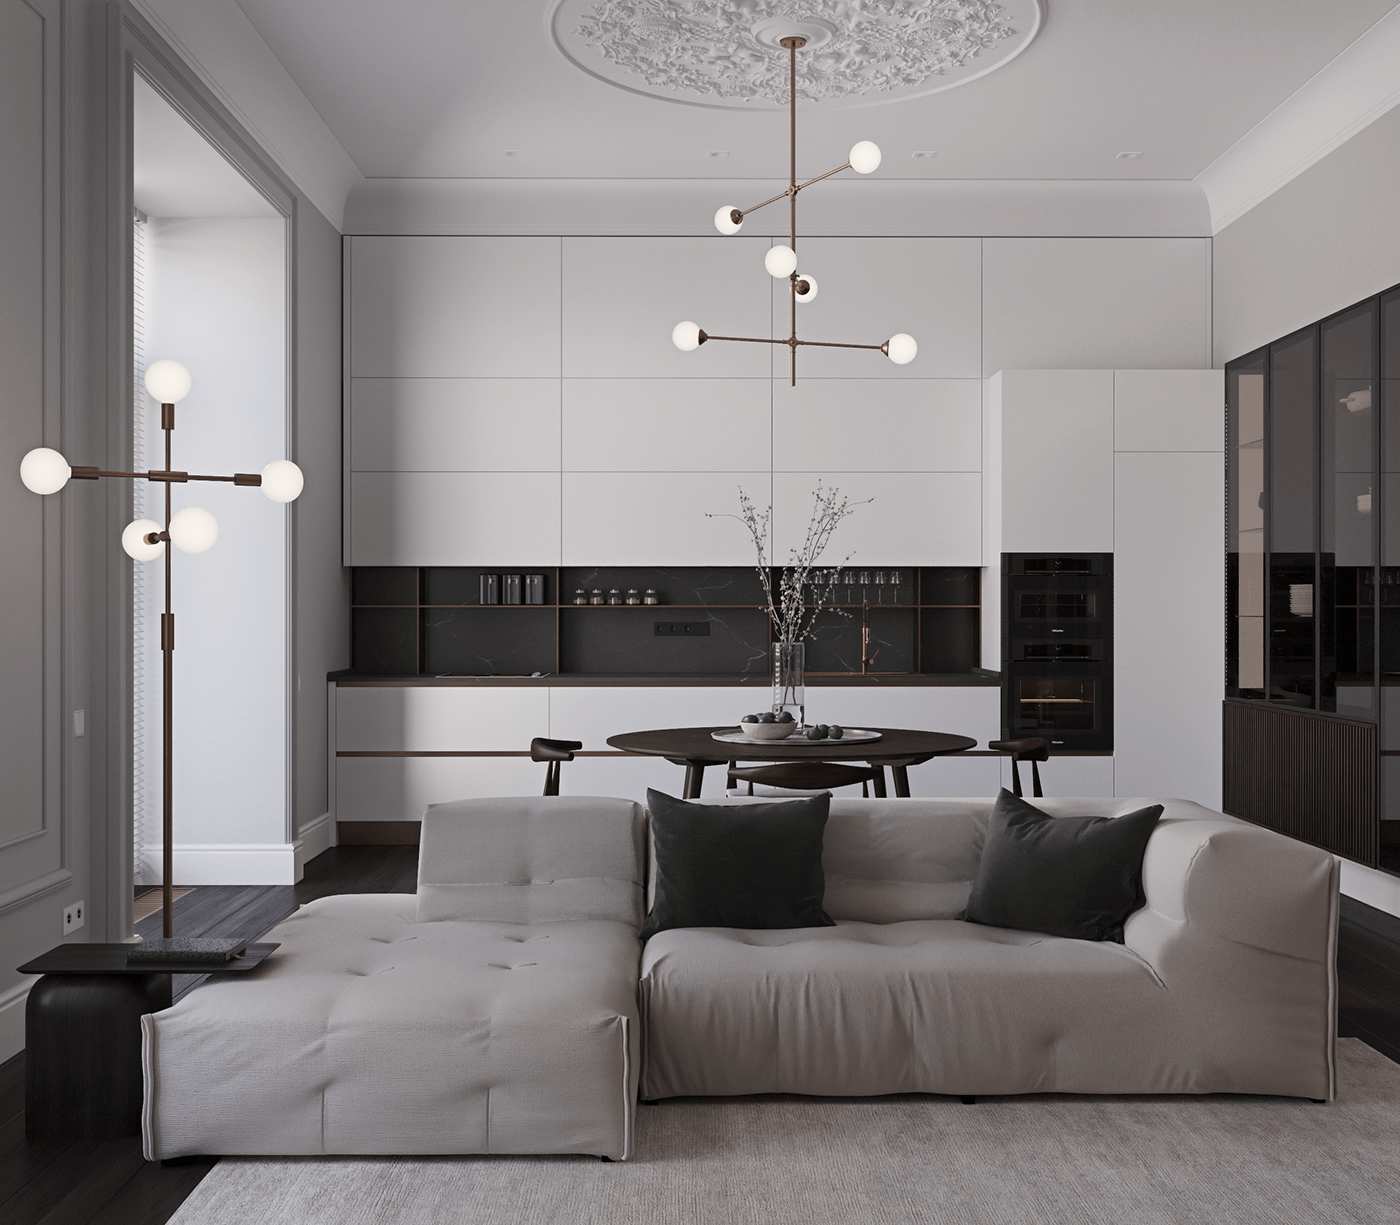 3D interior design  luxuryinterior modernclassic ukrainedesign visualization living room гостиная   дизайн интерьера интерьер